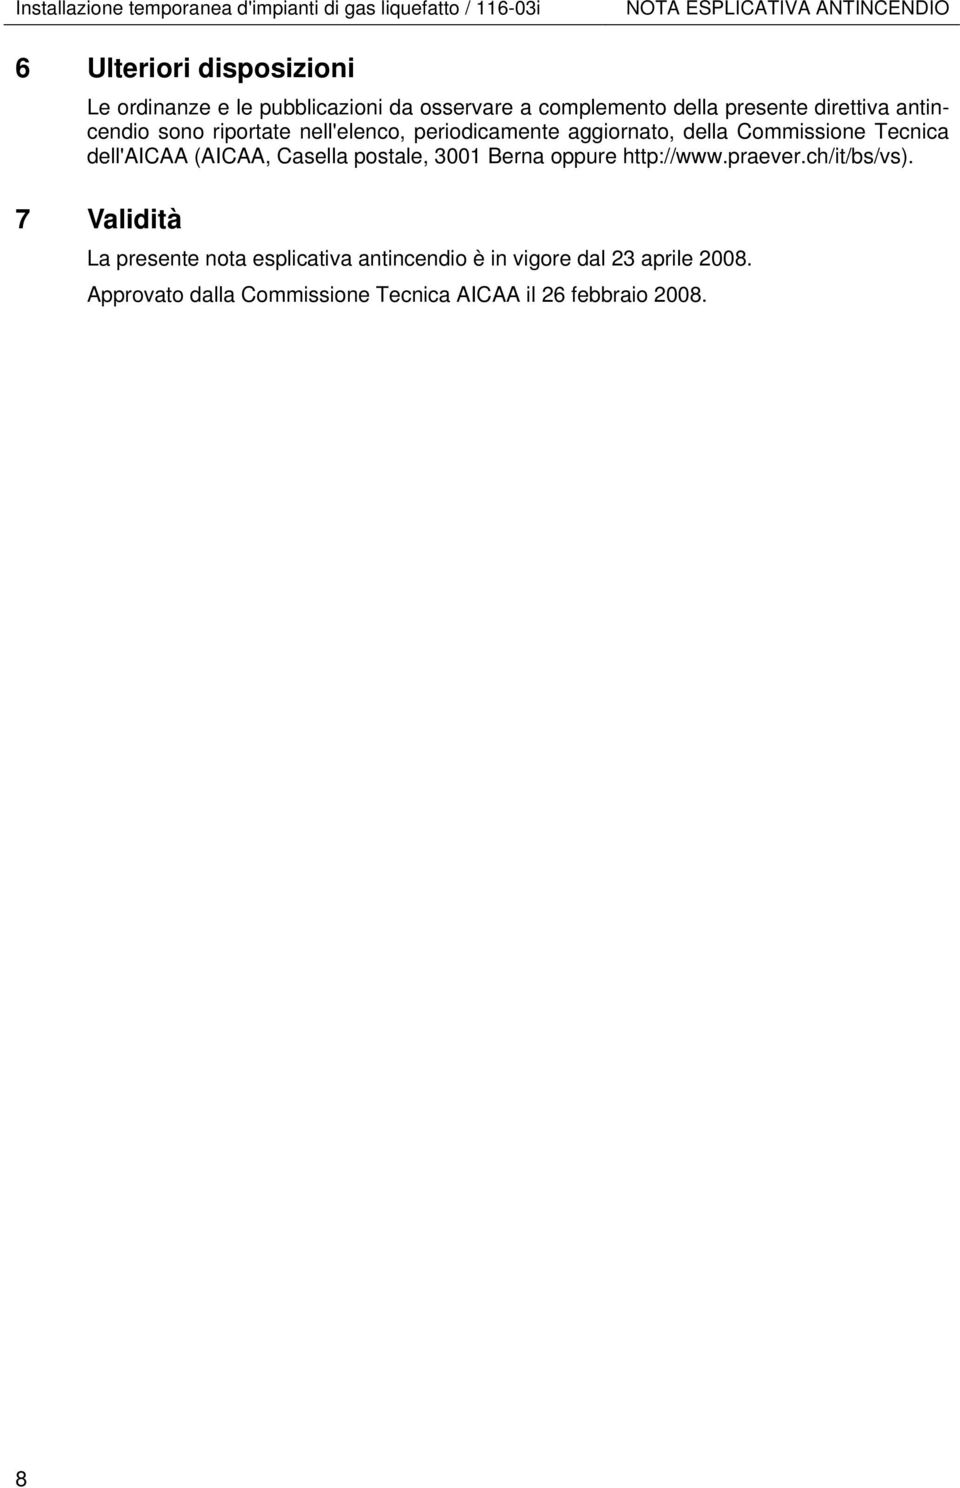 aggiornato, della Commissione Tecnica dell'aicaa (AICAA, Casella postale, 3001 Berna oppure http://www.praever.ch/it/bs/vs).